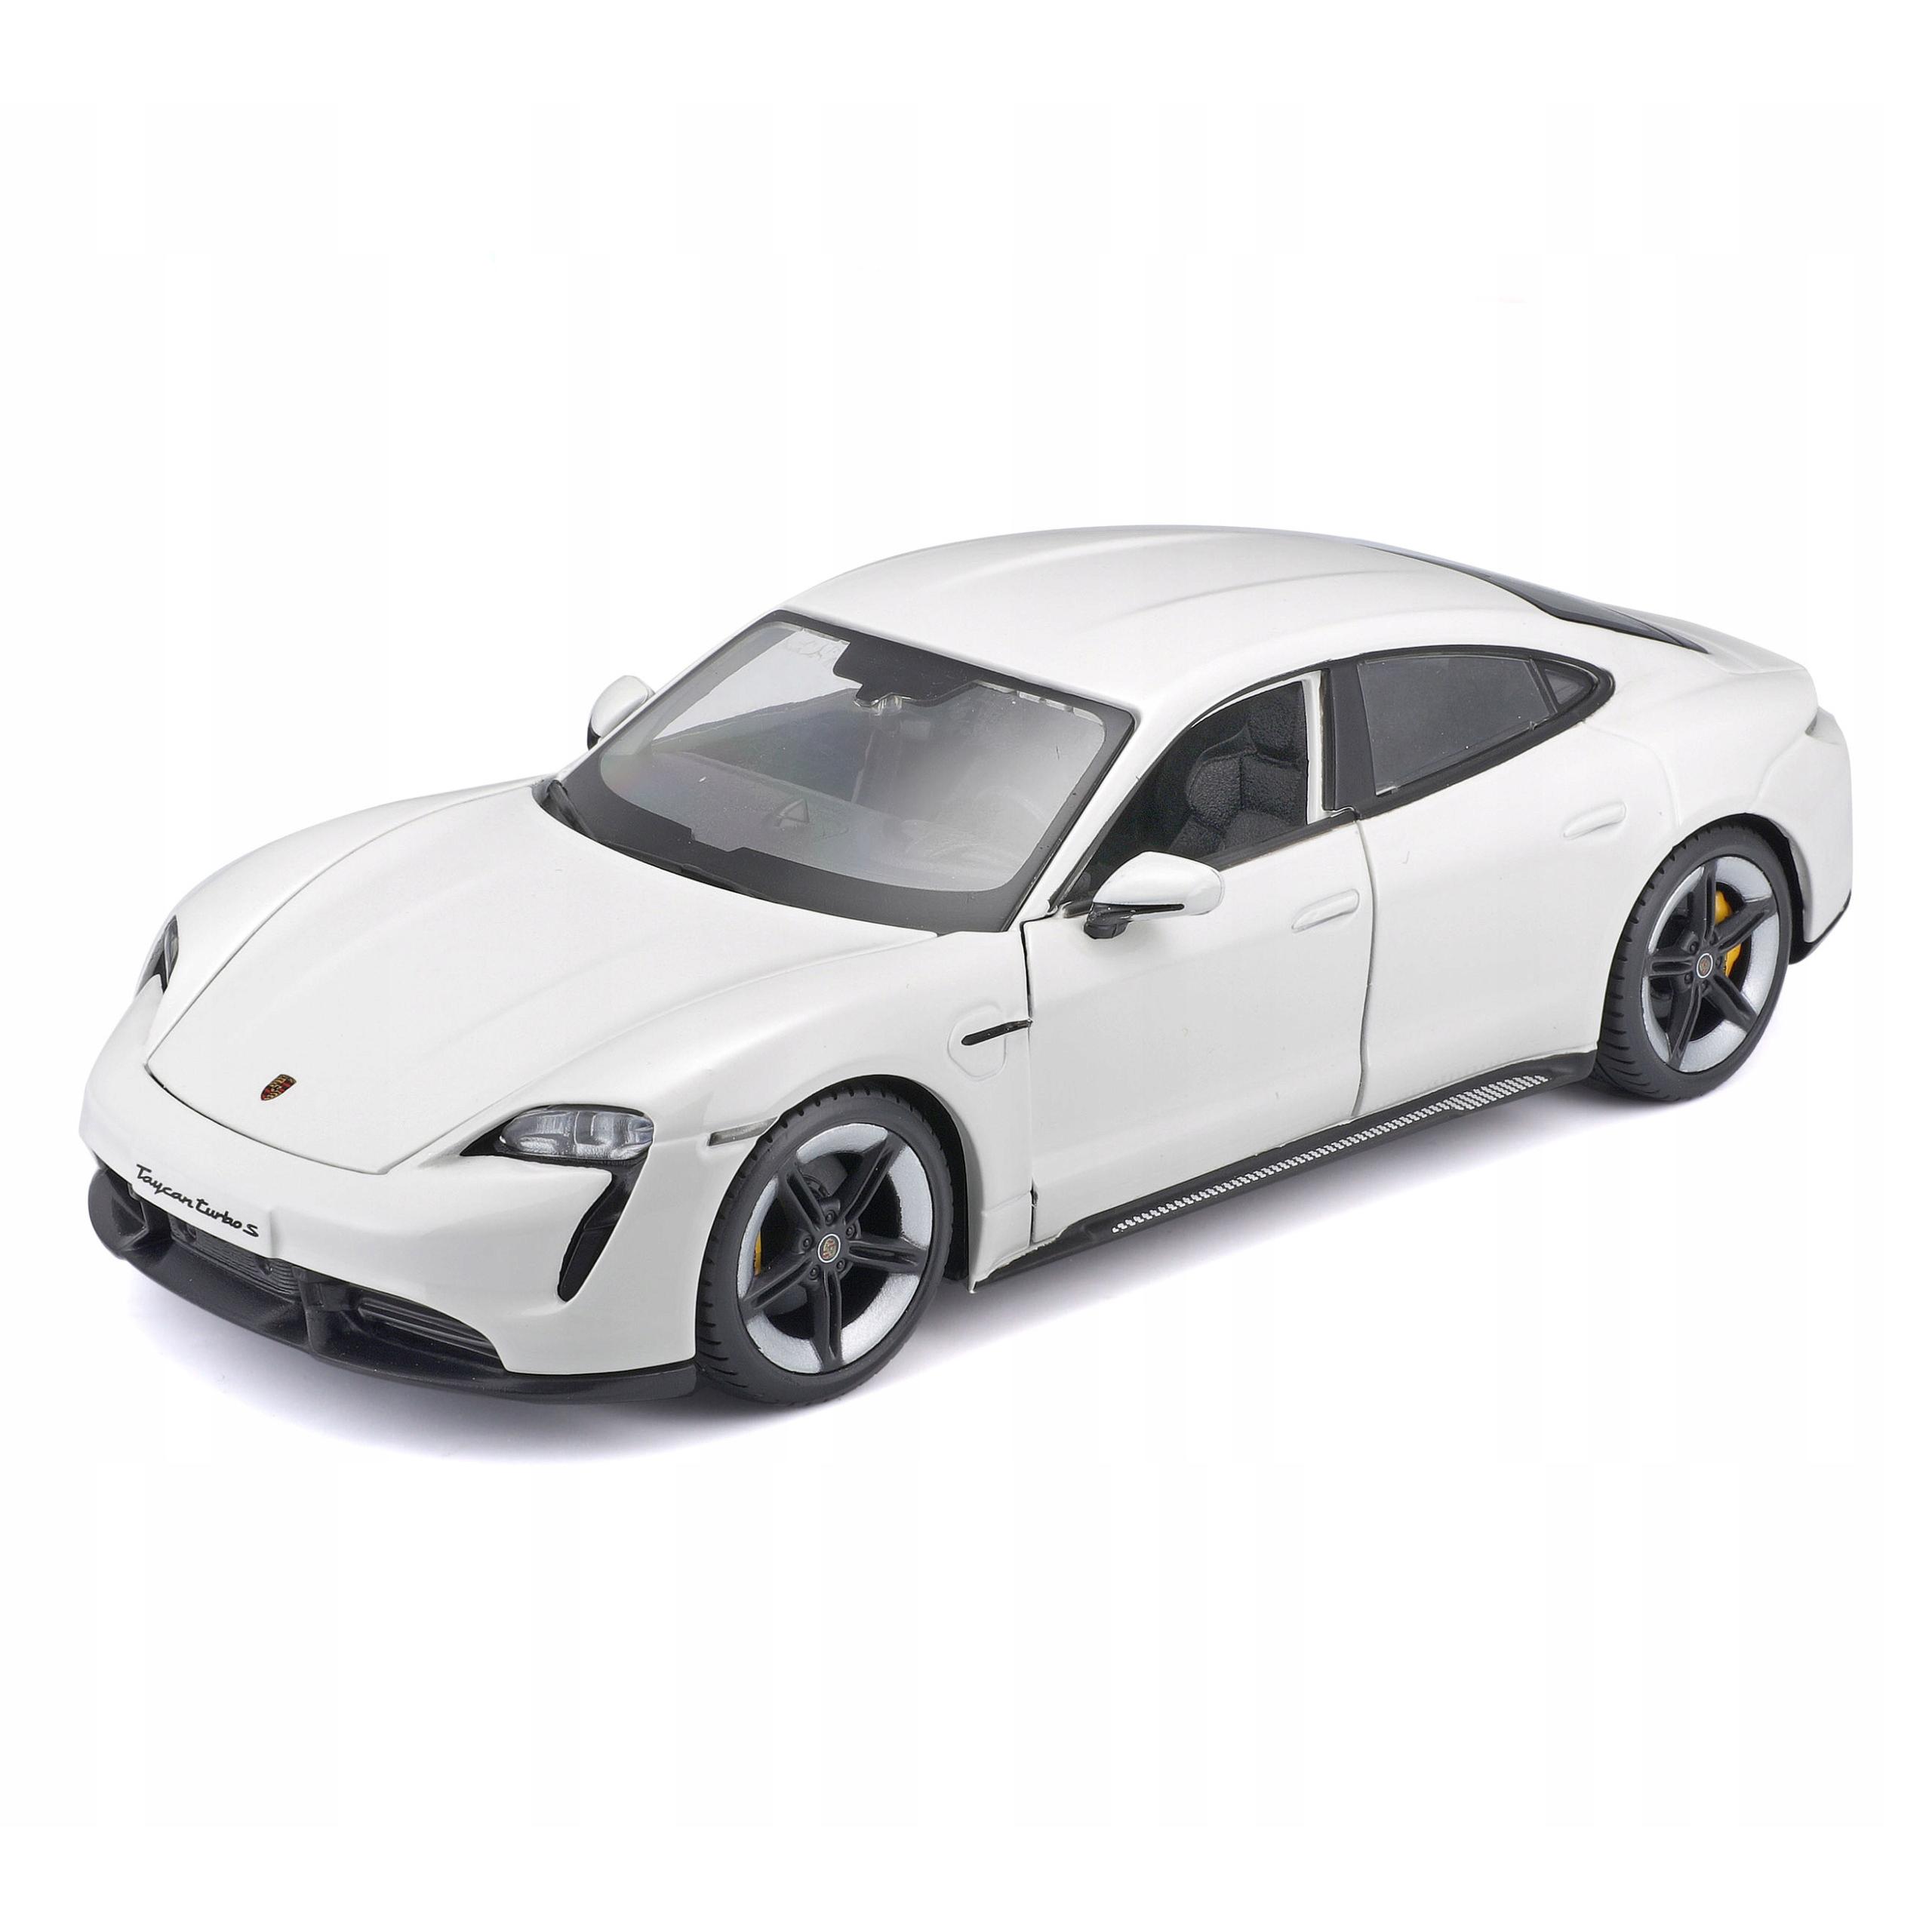 Игрушечная машинка Bburago металлическая Porsche Taycan Turbo S,1:24,белая игрушечная машинка bburago металлическая 1 32 2020 mustang shelby gt500 18 43000